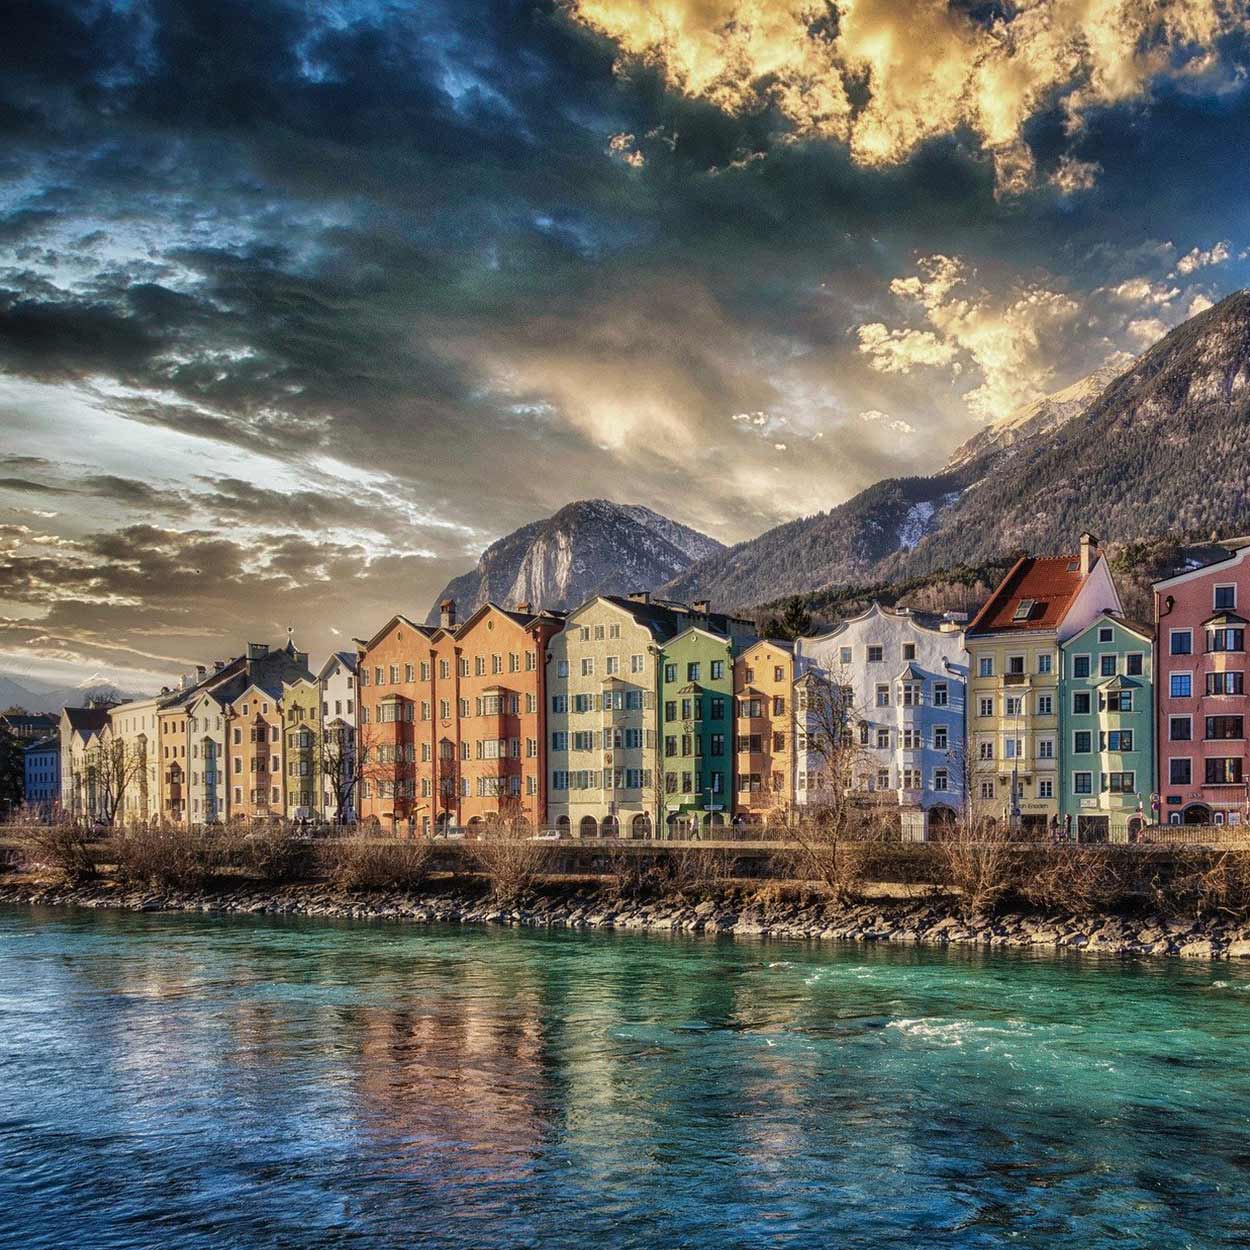 Tiroler Alpenbühne, Innsbruck